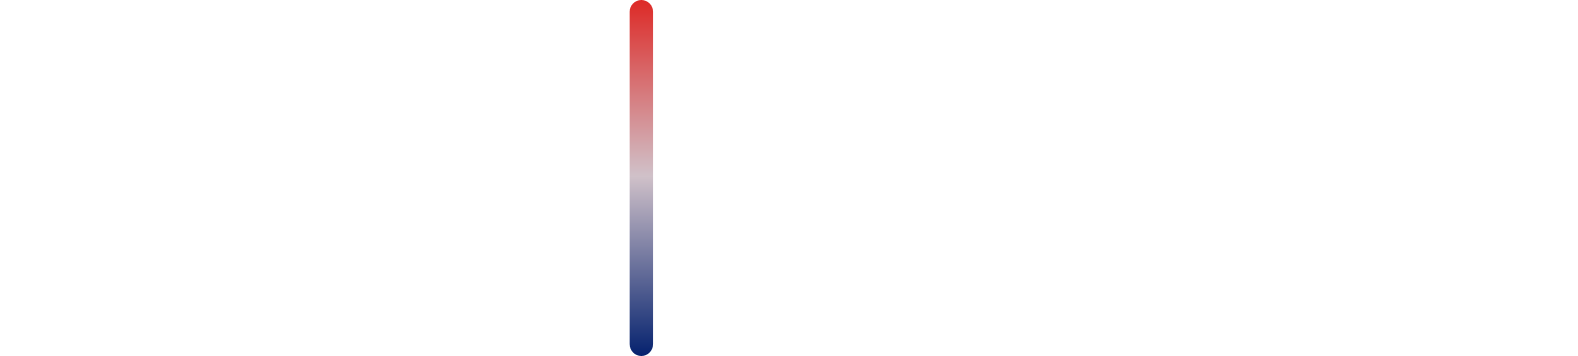 Aspen Aerogels logo large for dark backgrounds (transparent PNG)